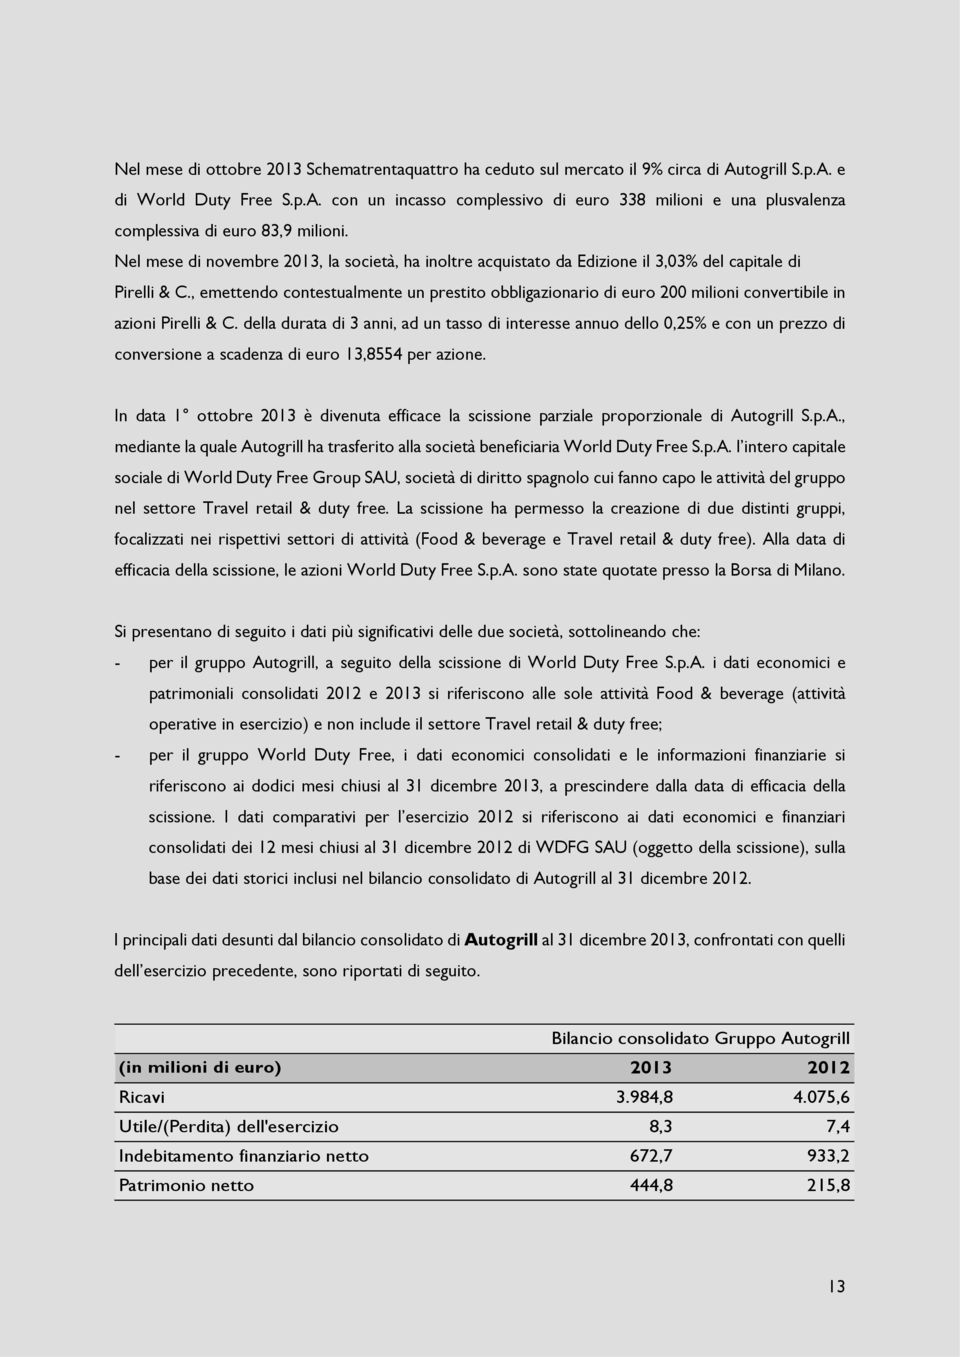 , emettendo contestualmente un prestito obbligazionario di euro 200 milioni convertibile in azioni Pirelli & C.